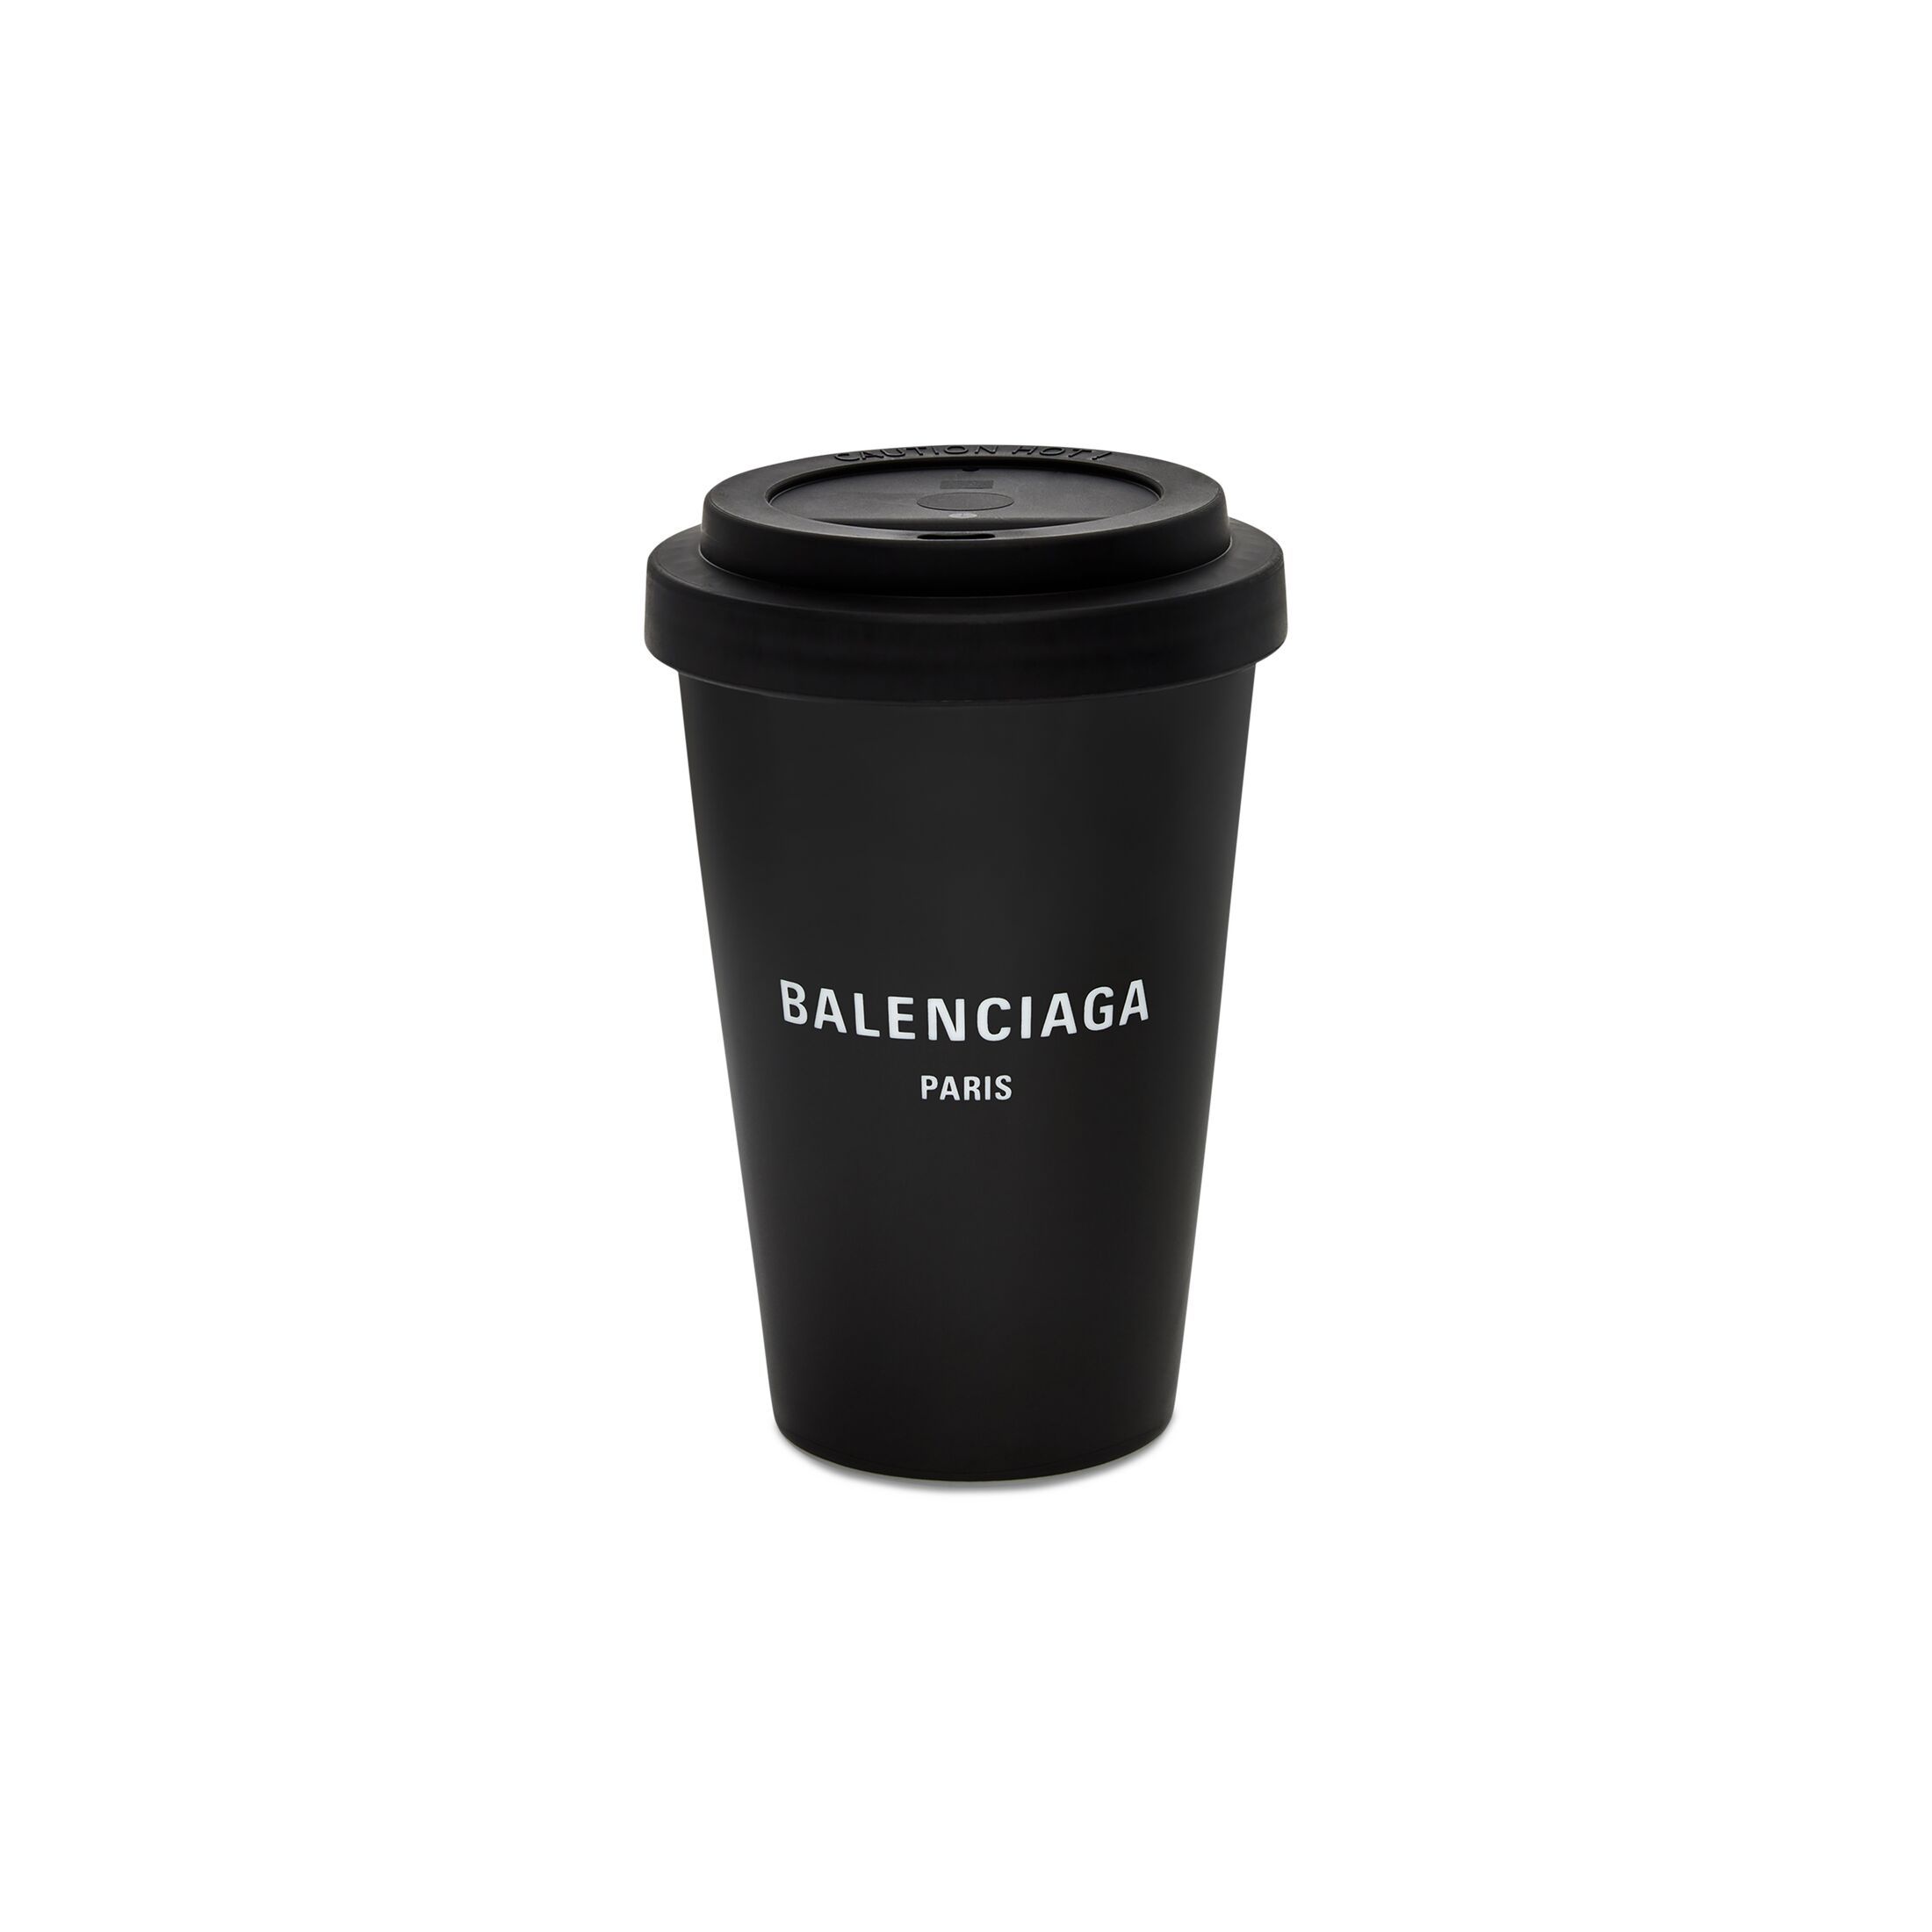 paris coffee cup | Balenciaga